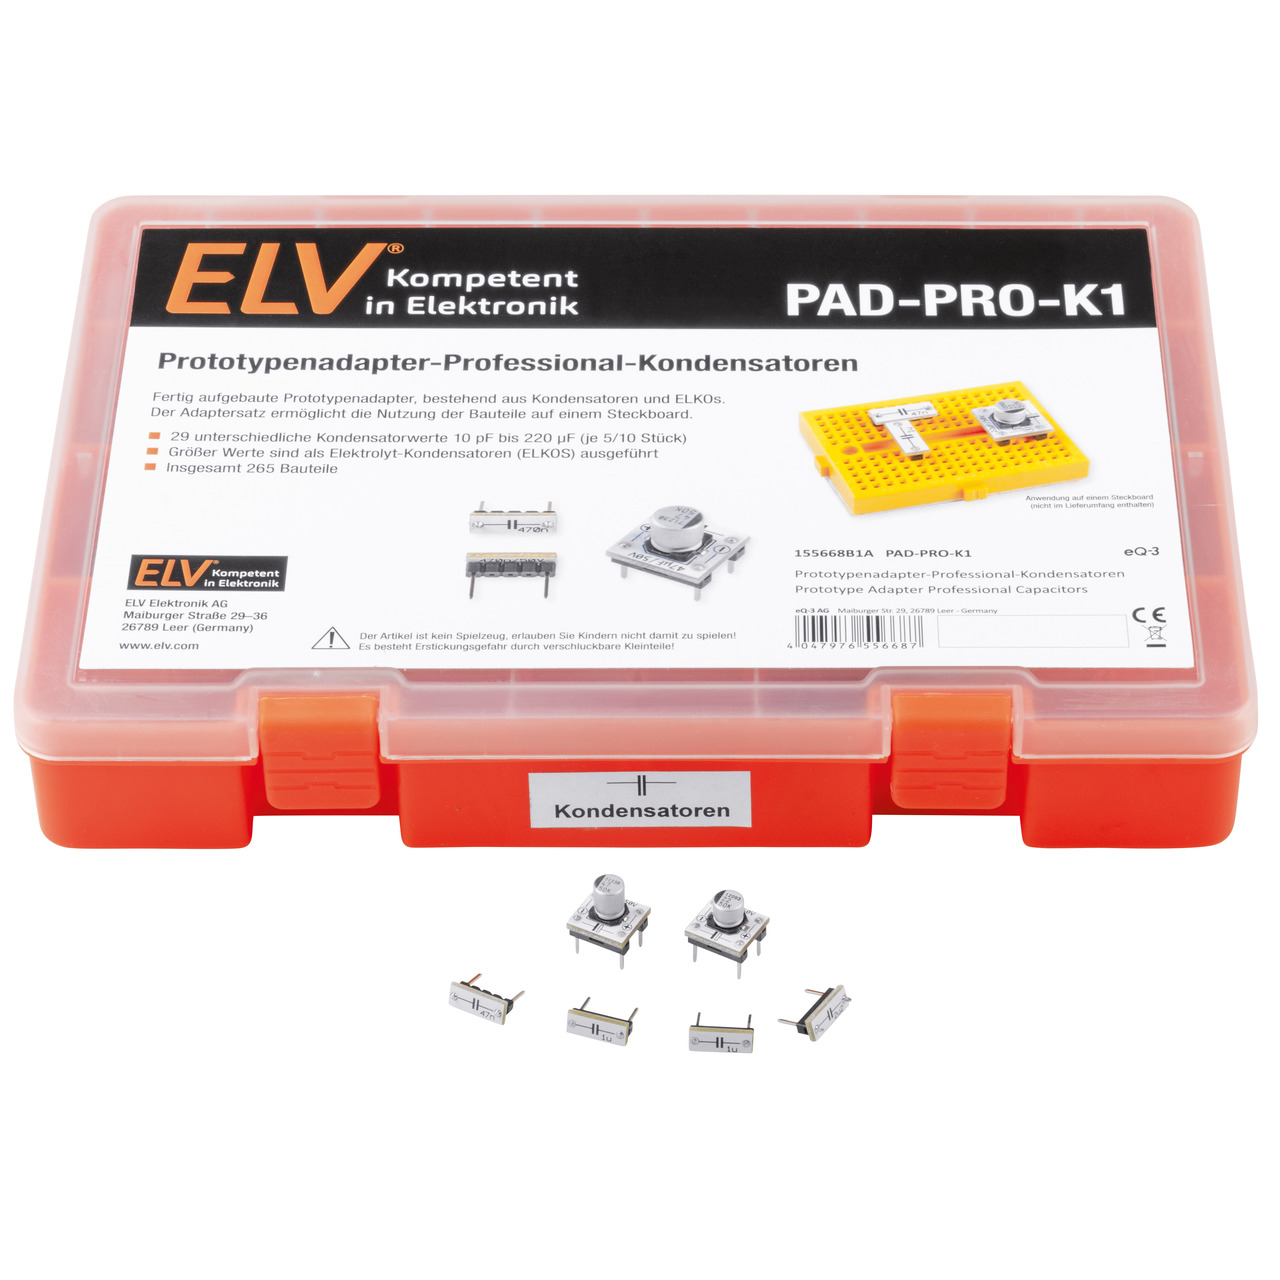 ELV Aufbewahrungsbox mit Kondensatoren und ELKOs PAD-PRO-K1- 265 Teile  unter Bausätze